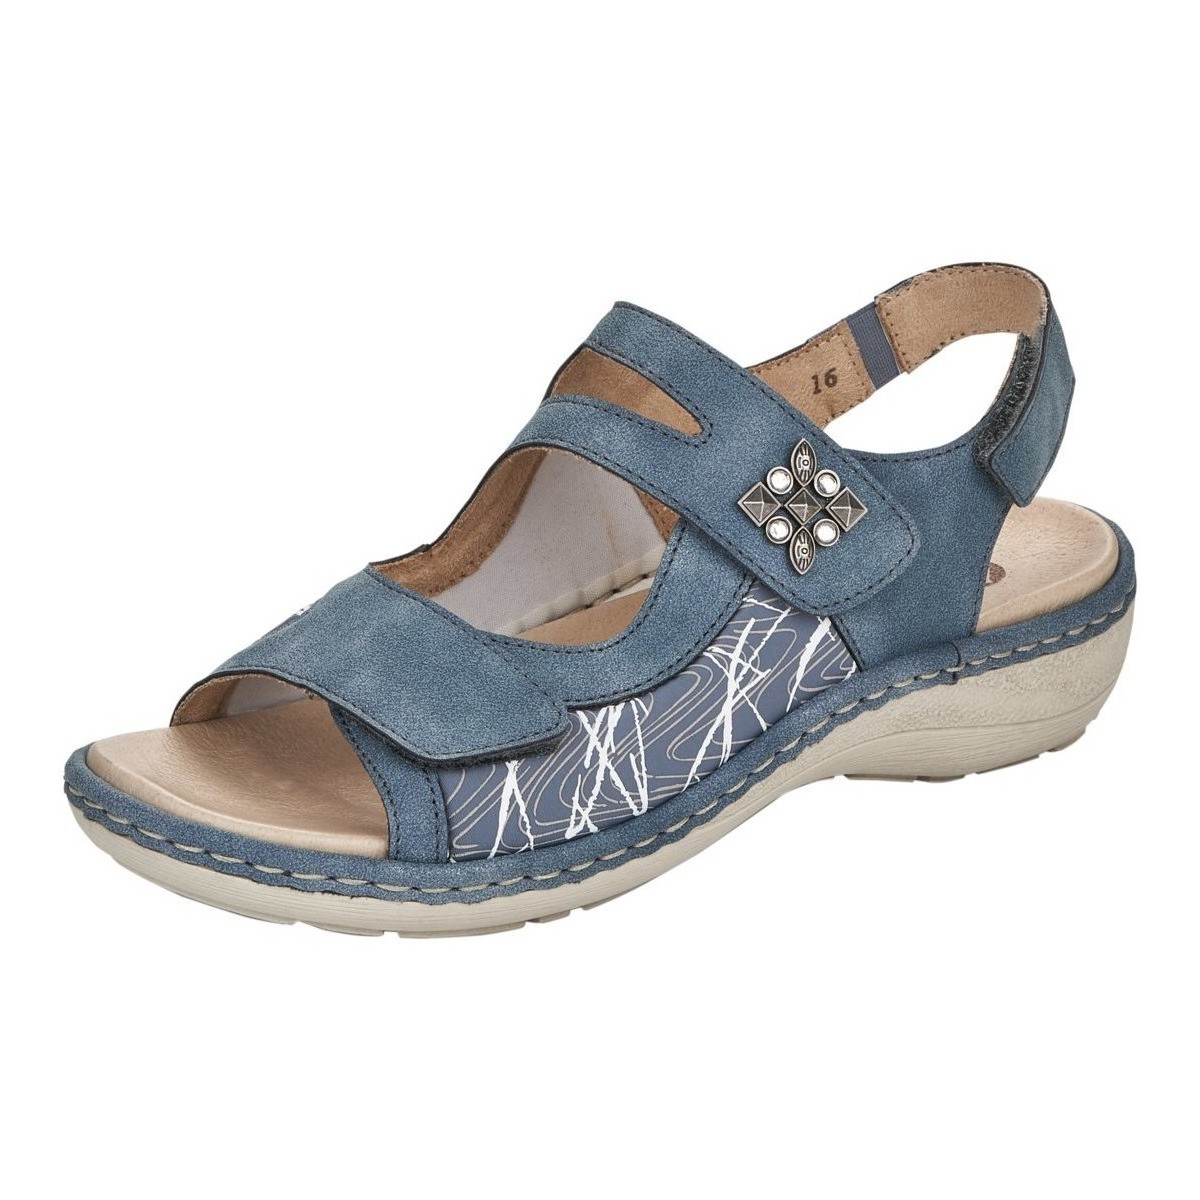 Schoenen Dames Sandalen / Open schoenen Remonte  Blauw